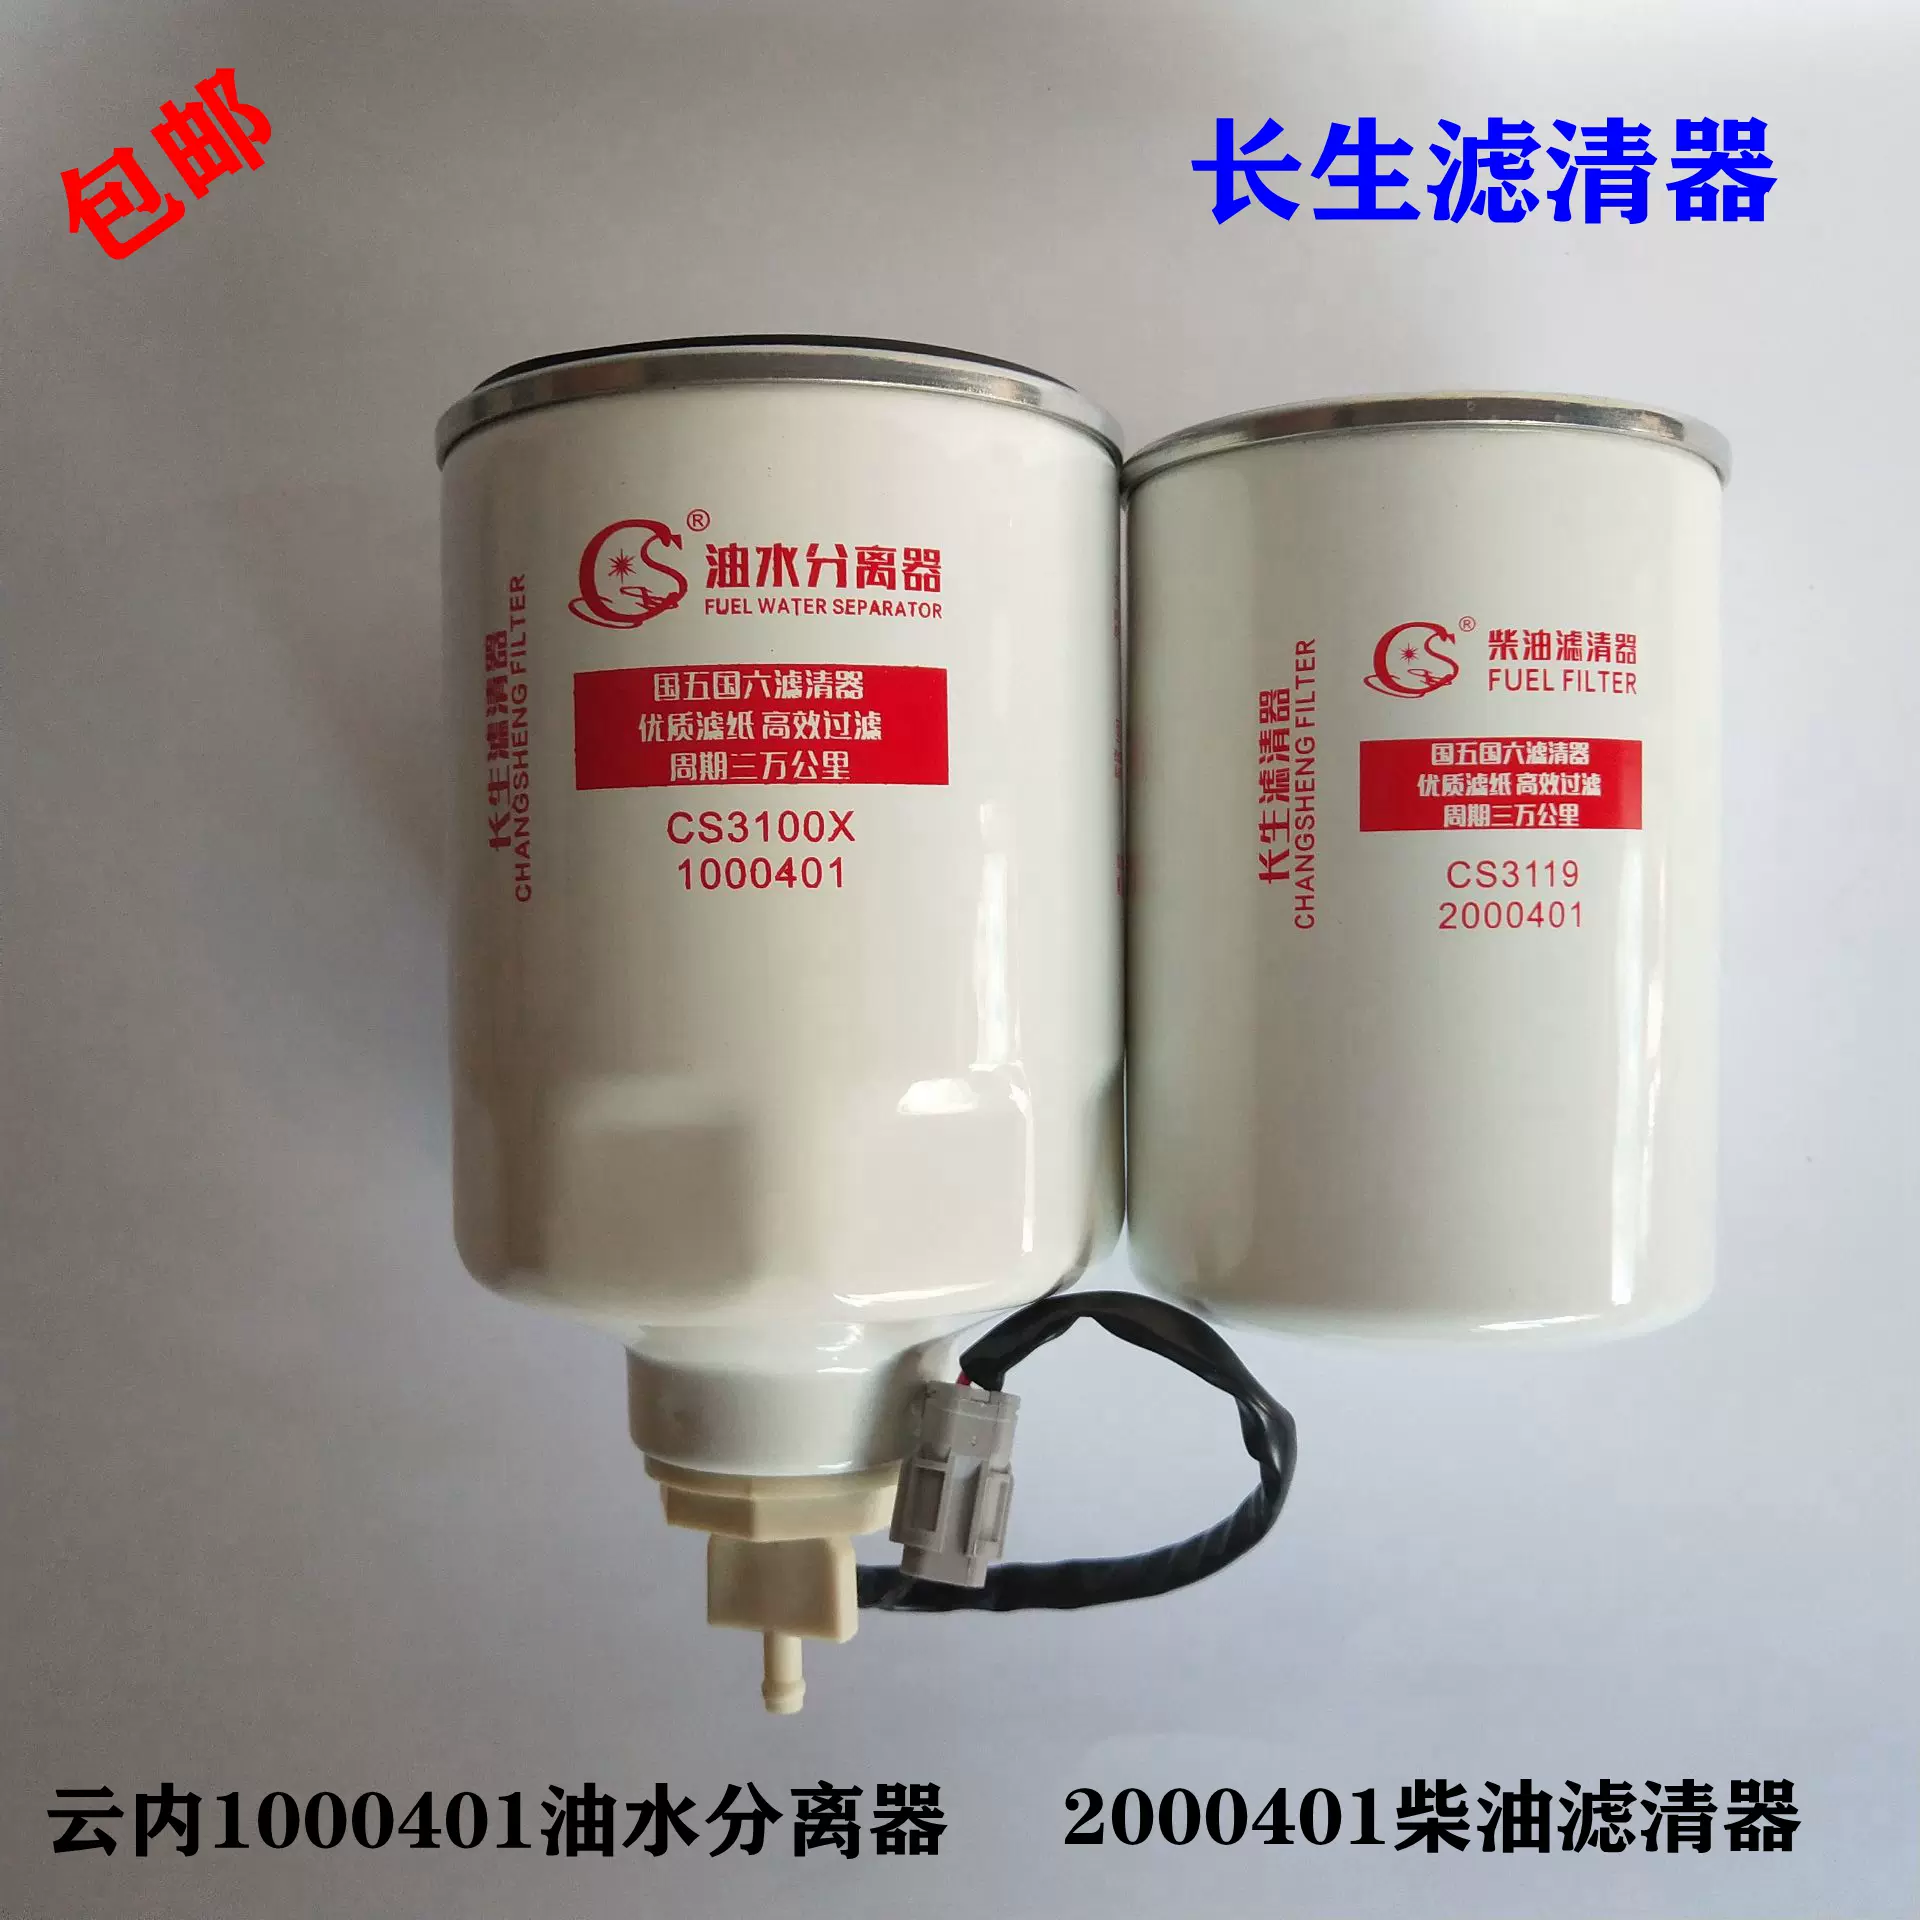 1001801油水分离器2001801柴油滤清器适用云内发动机Y1104 Y112-Taobao